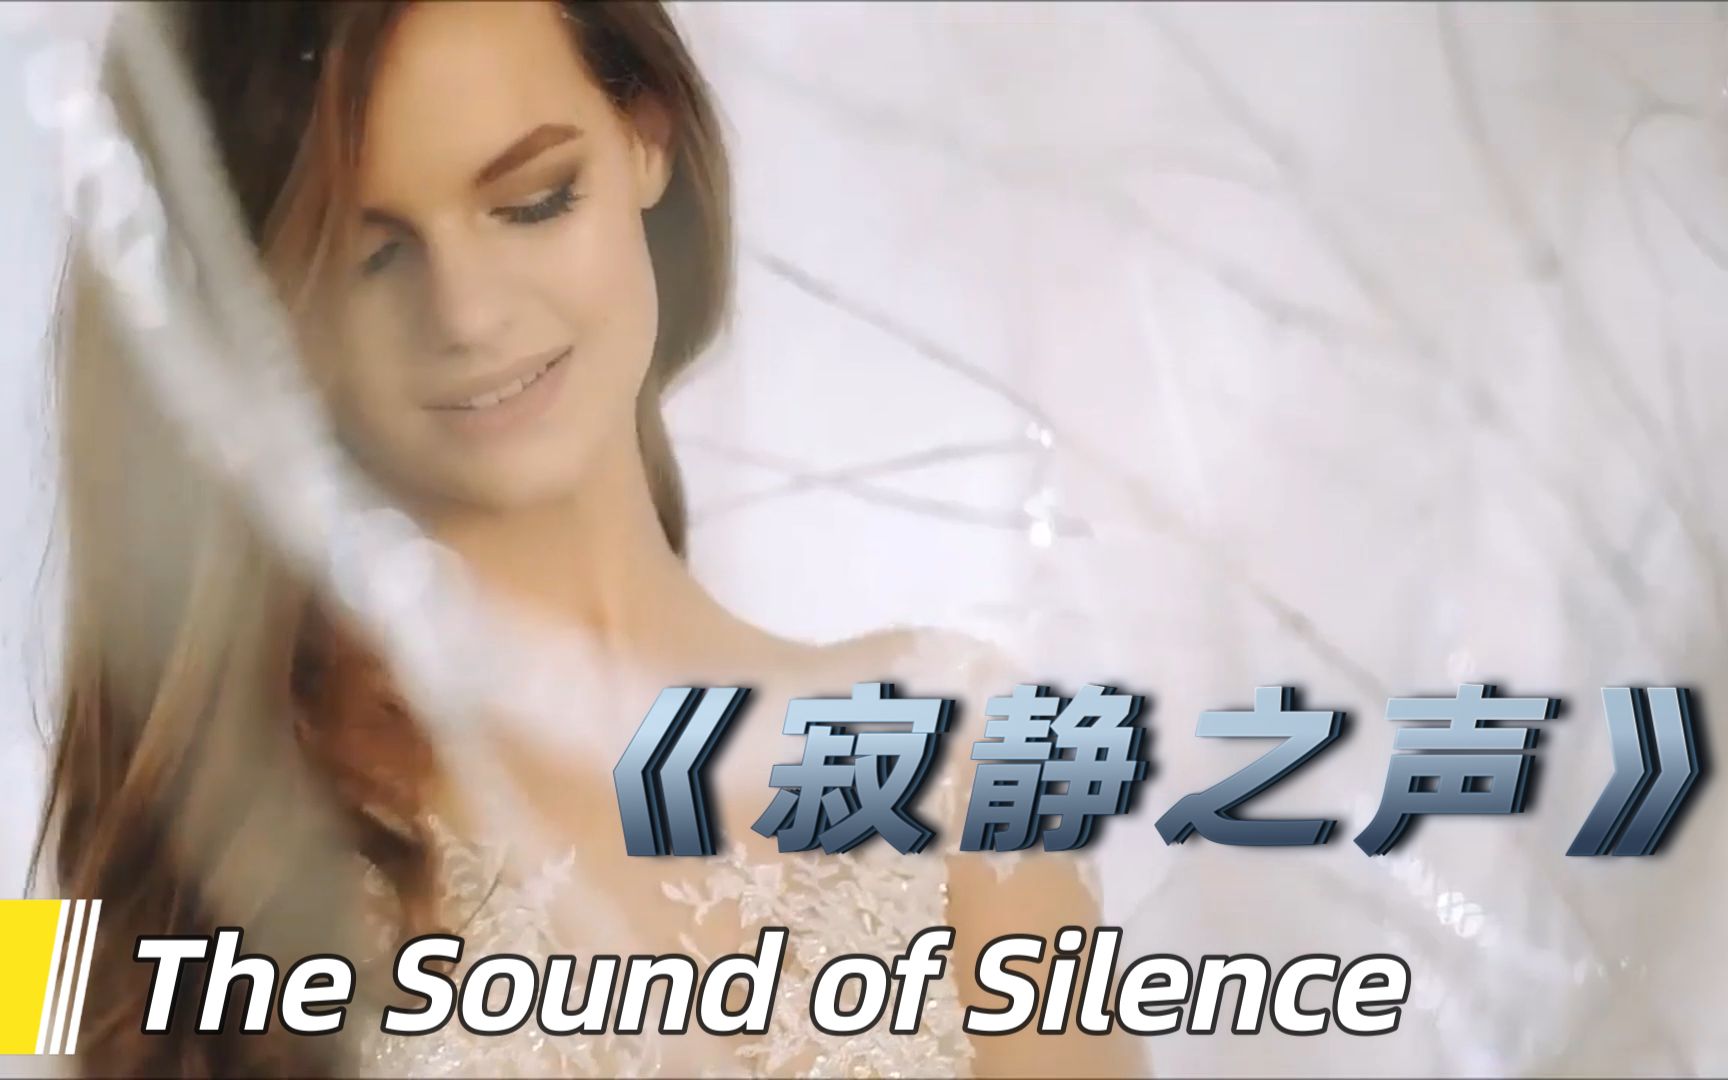 天籁女声柔版《The Sound of Silence寂静之声》中英双语字幕